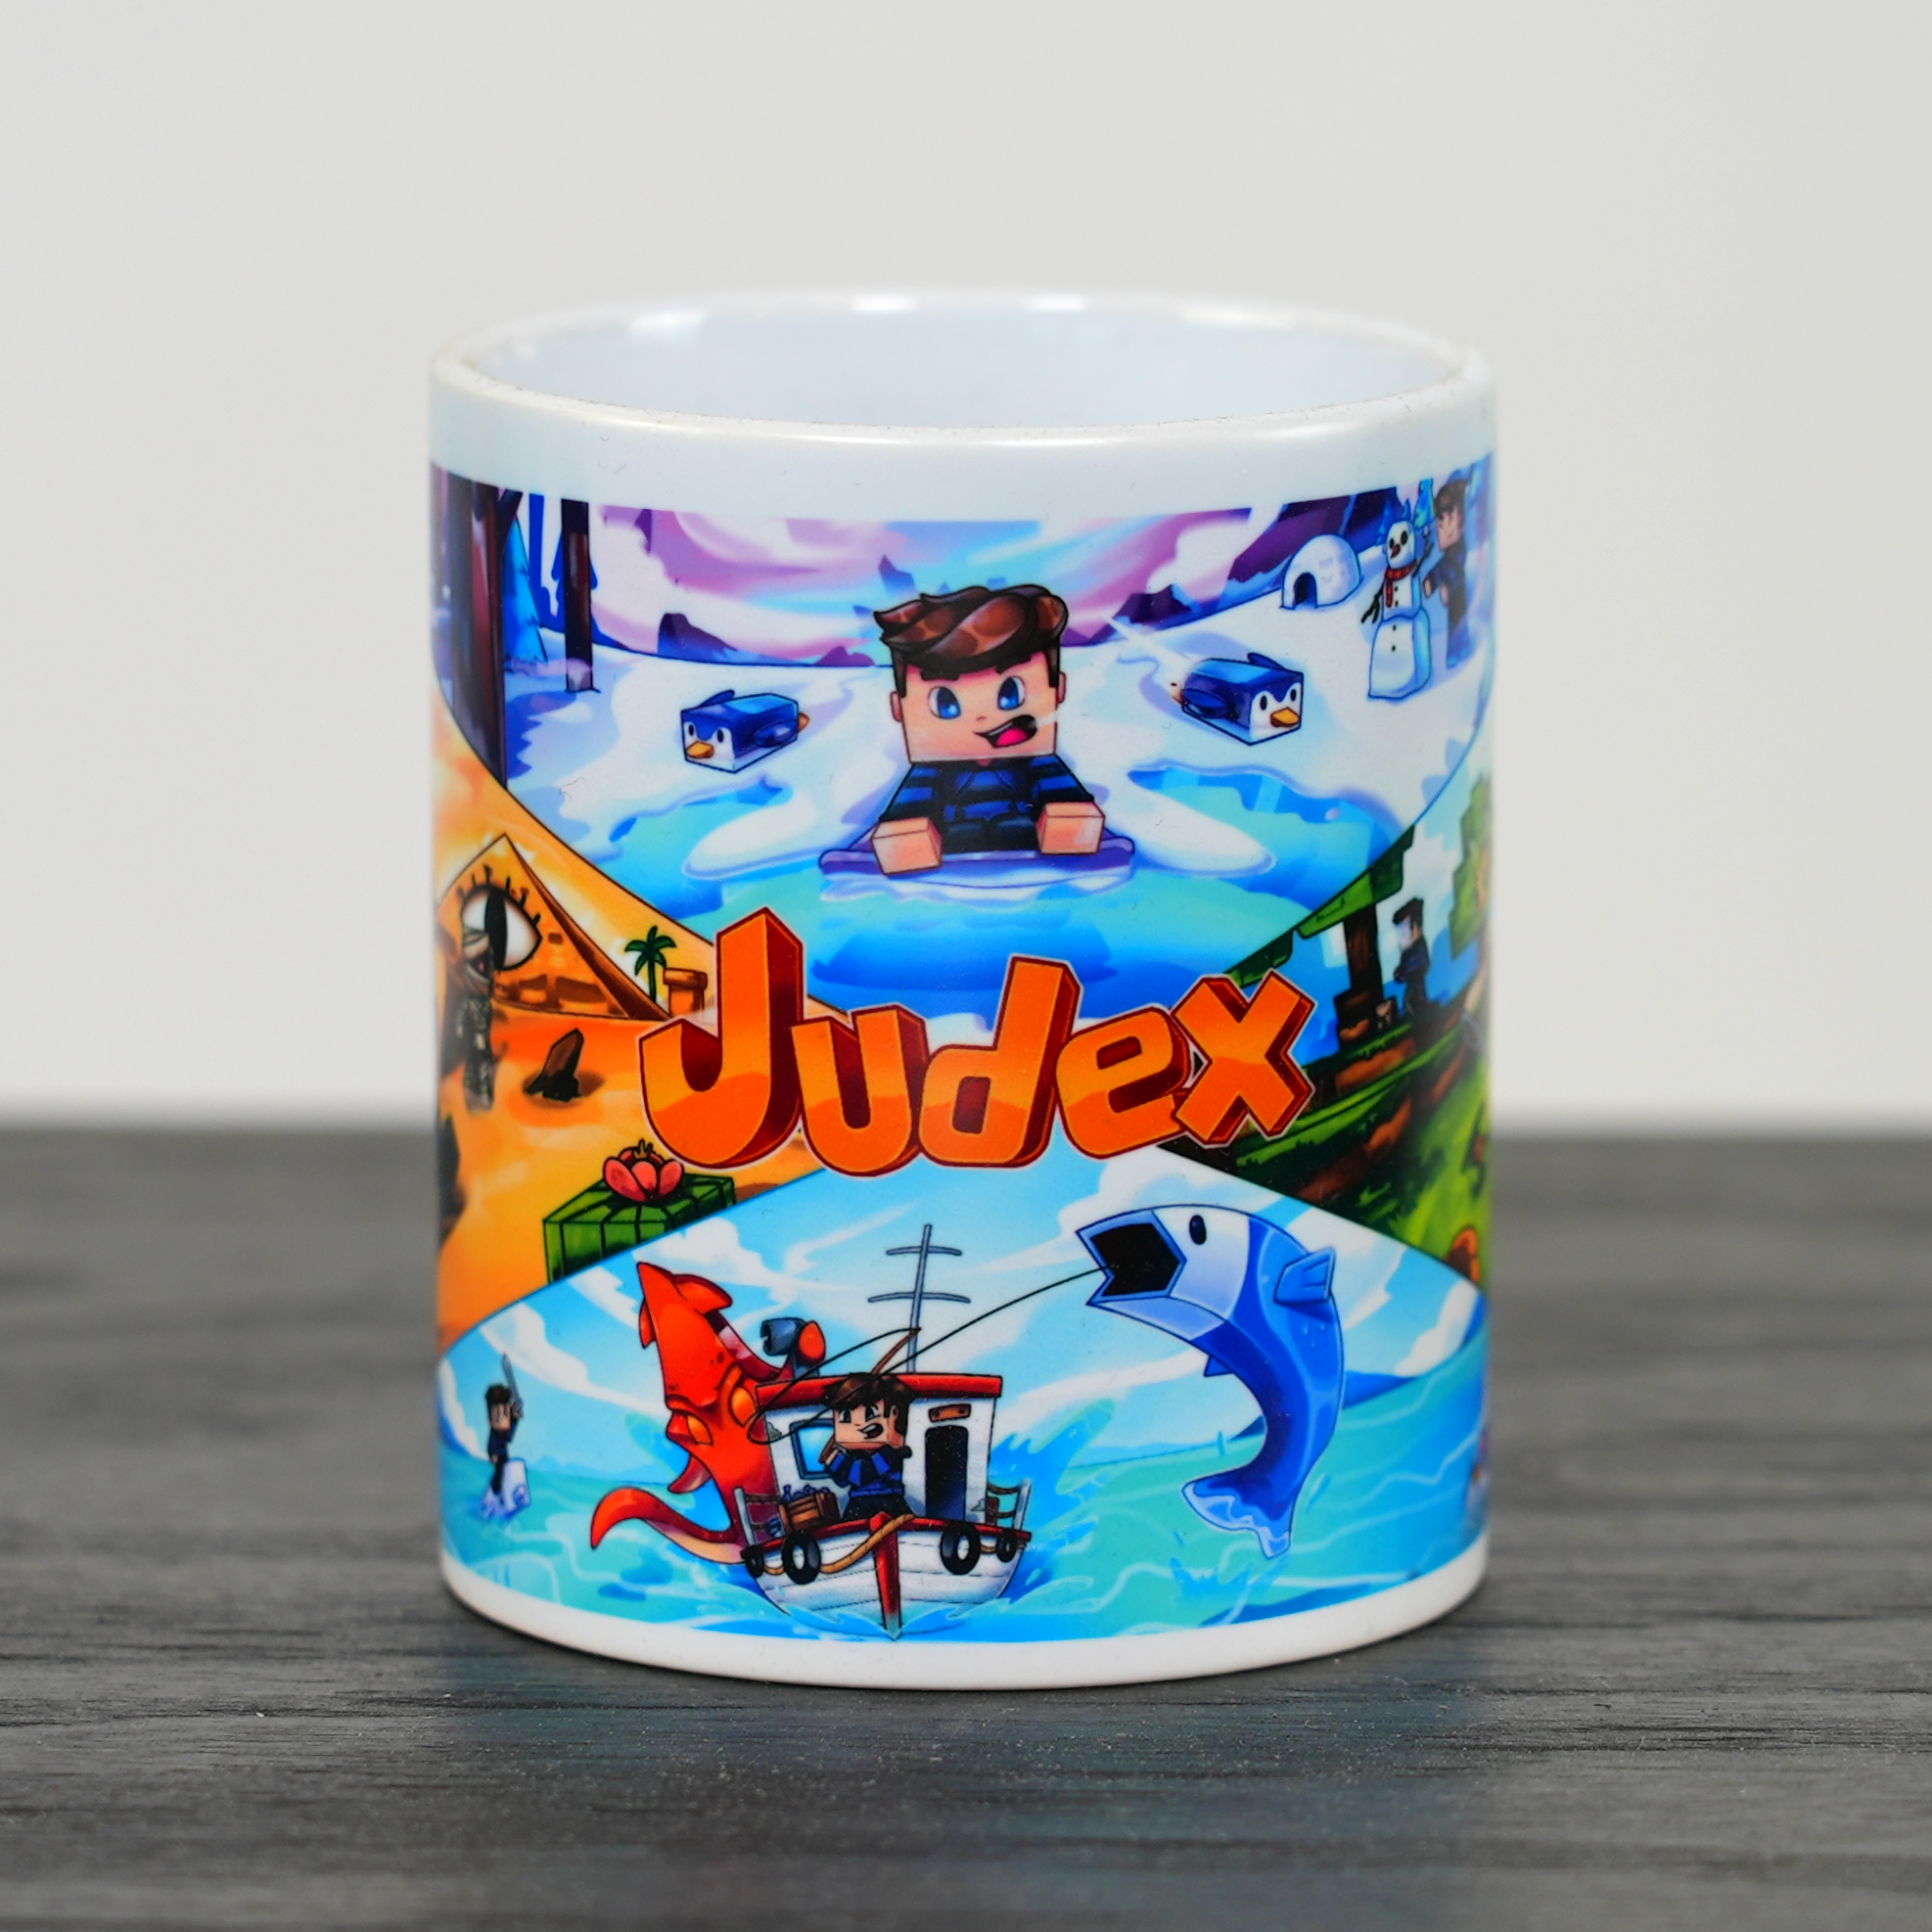 Judex-Cup